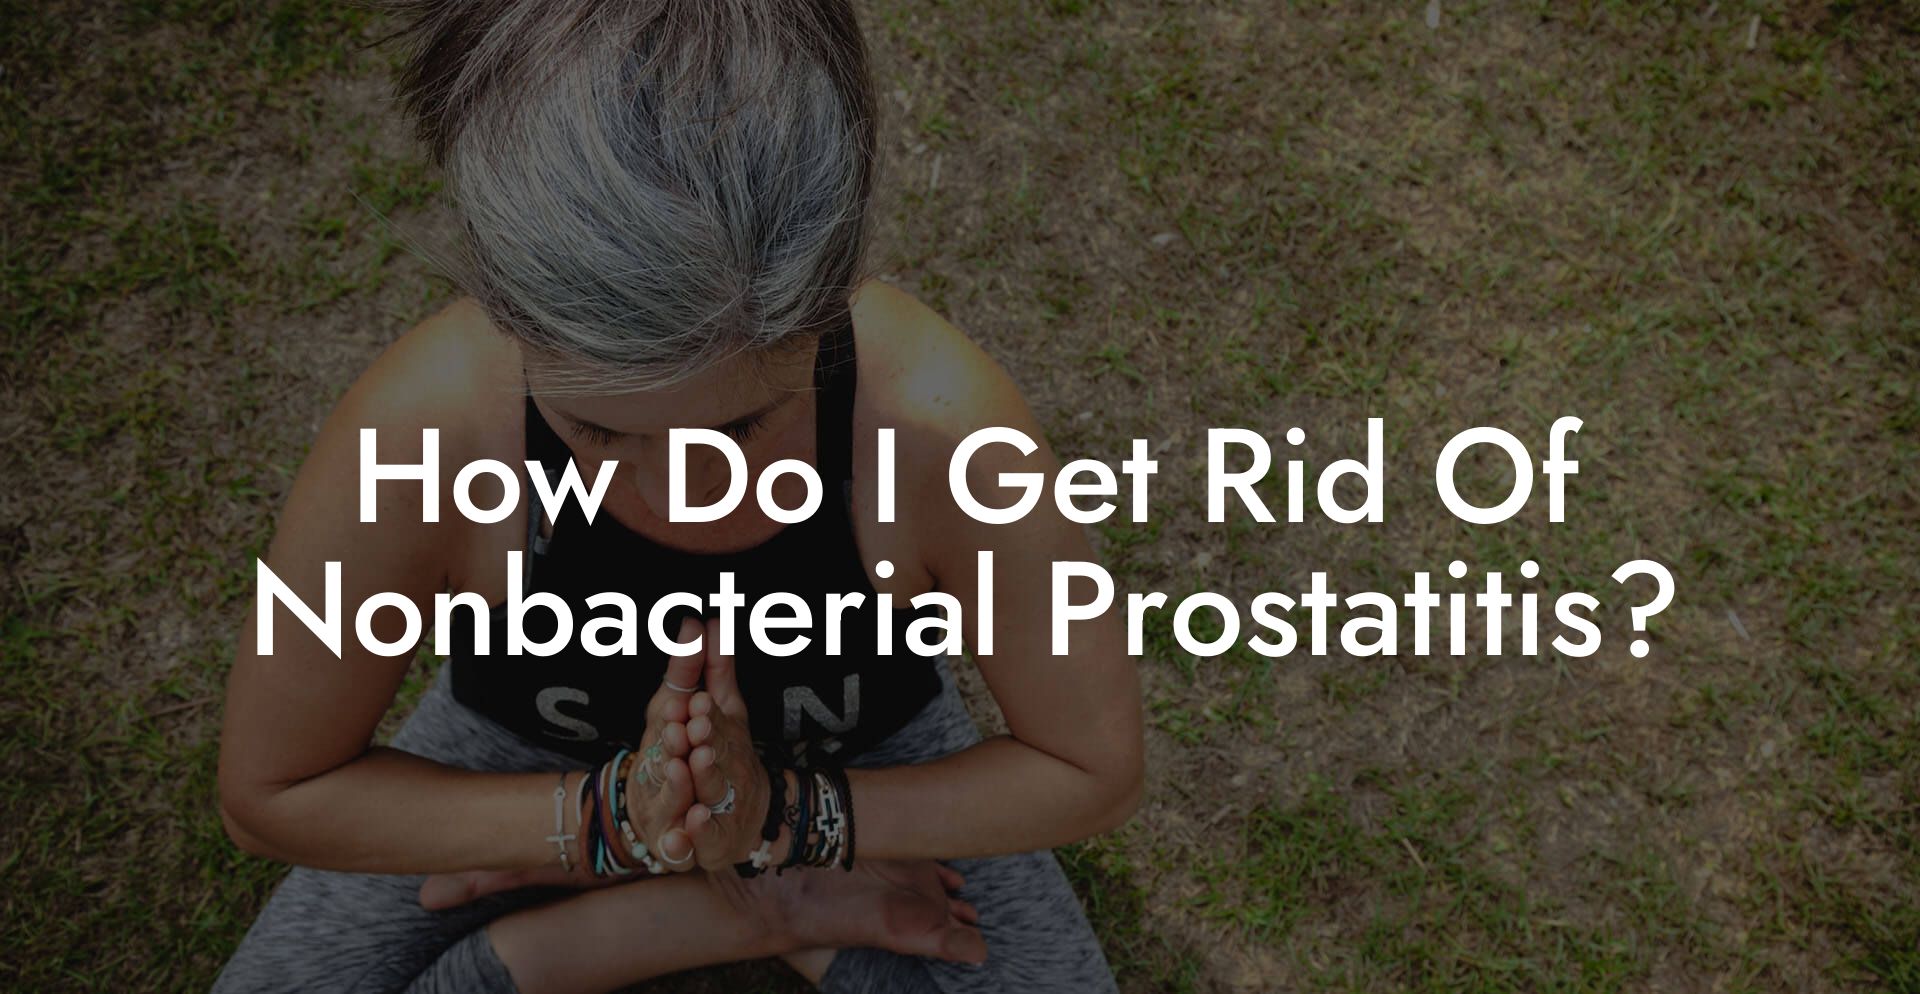 How Do I Get Rid Of Nonbacterial Prostatitis?